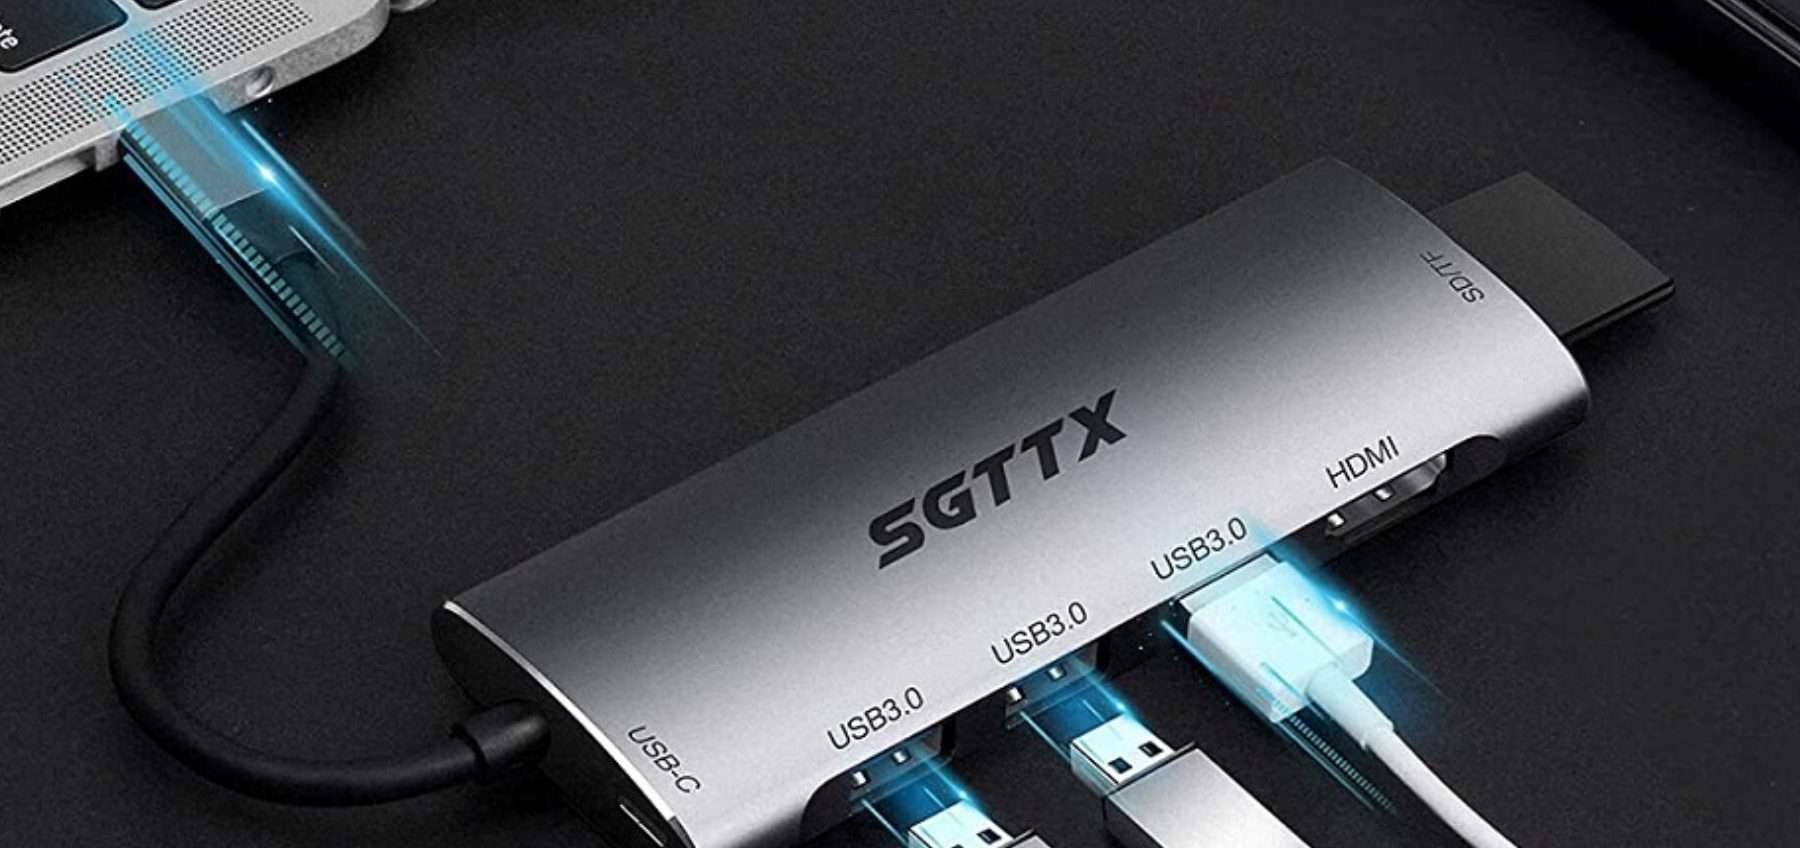 SGTTX 7 in 1: l'HUB ultracompatto a meno di quello che pensi